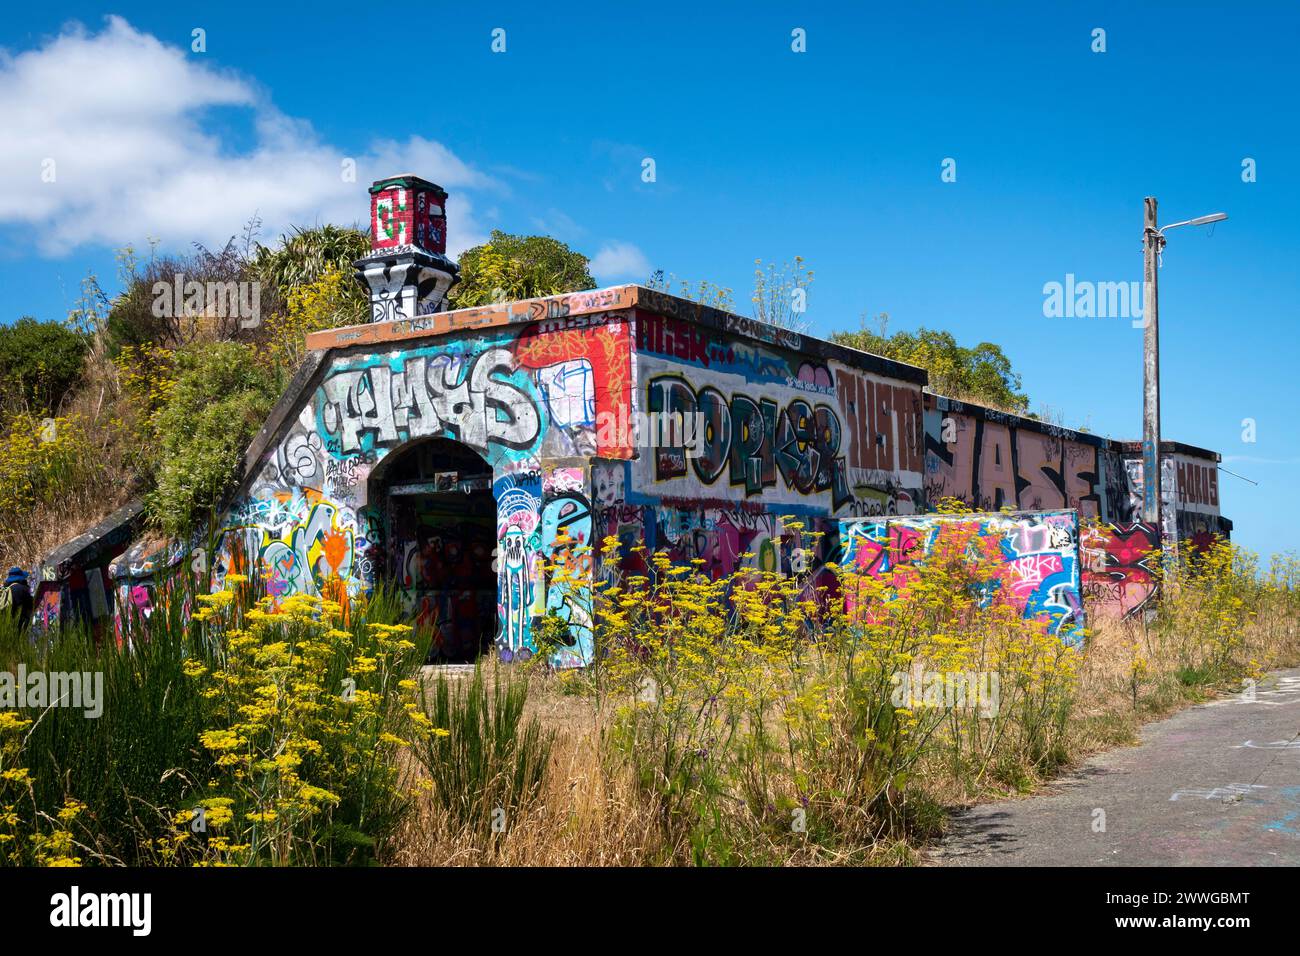 Emplacements de canons couverts de graffitis, Fort Balance, Wellington, Île du Nord, Nouvelle-Zélande. Des canons lourds protégeaient le port de Wellington pendant la seconde Guerre mondiale. Banque D'Images